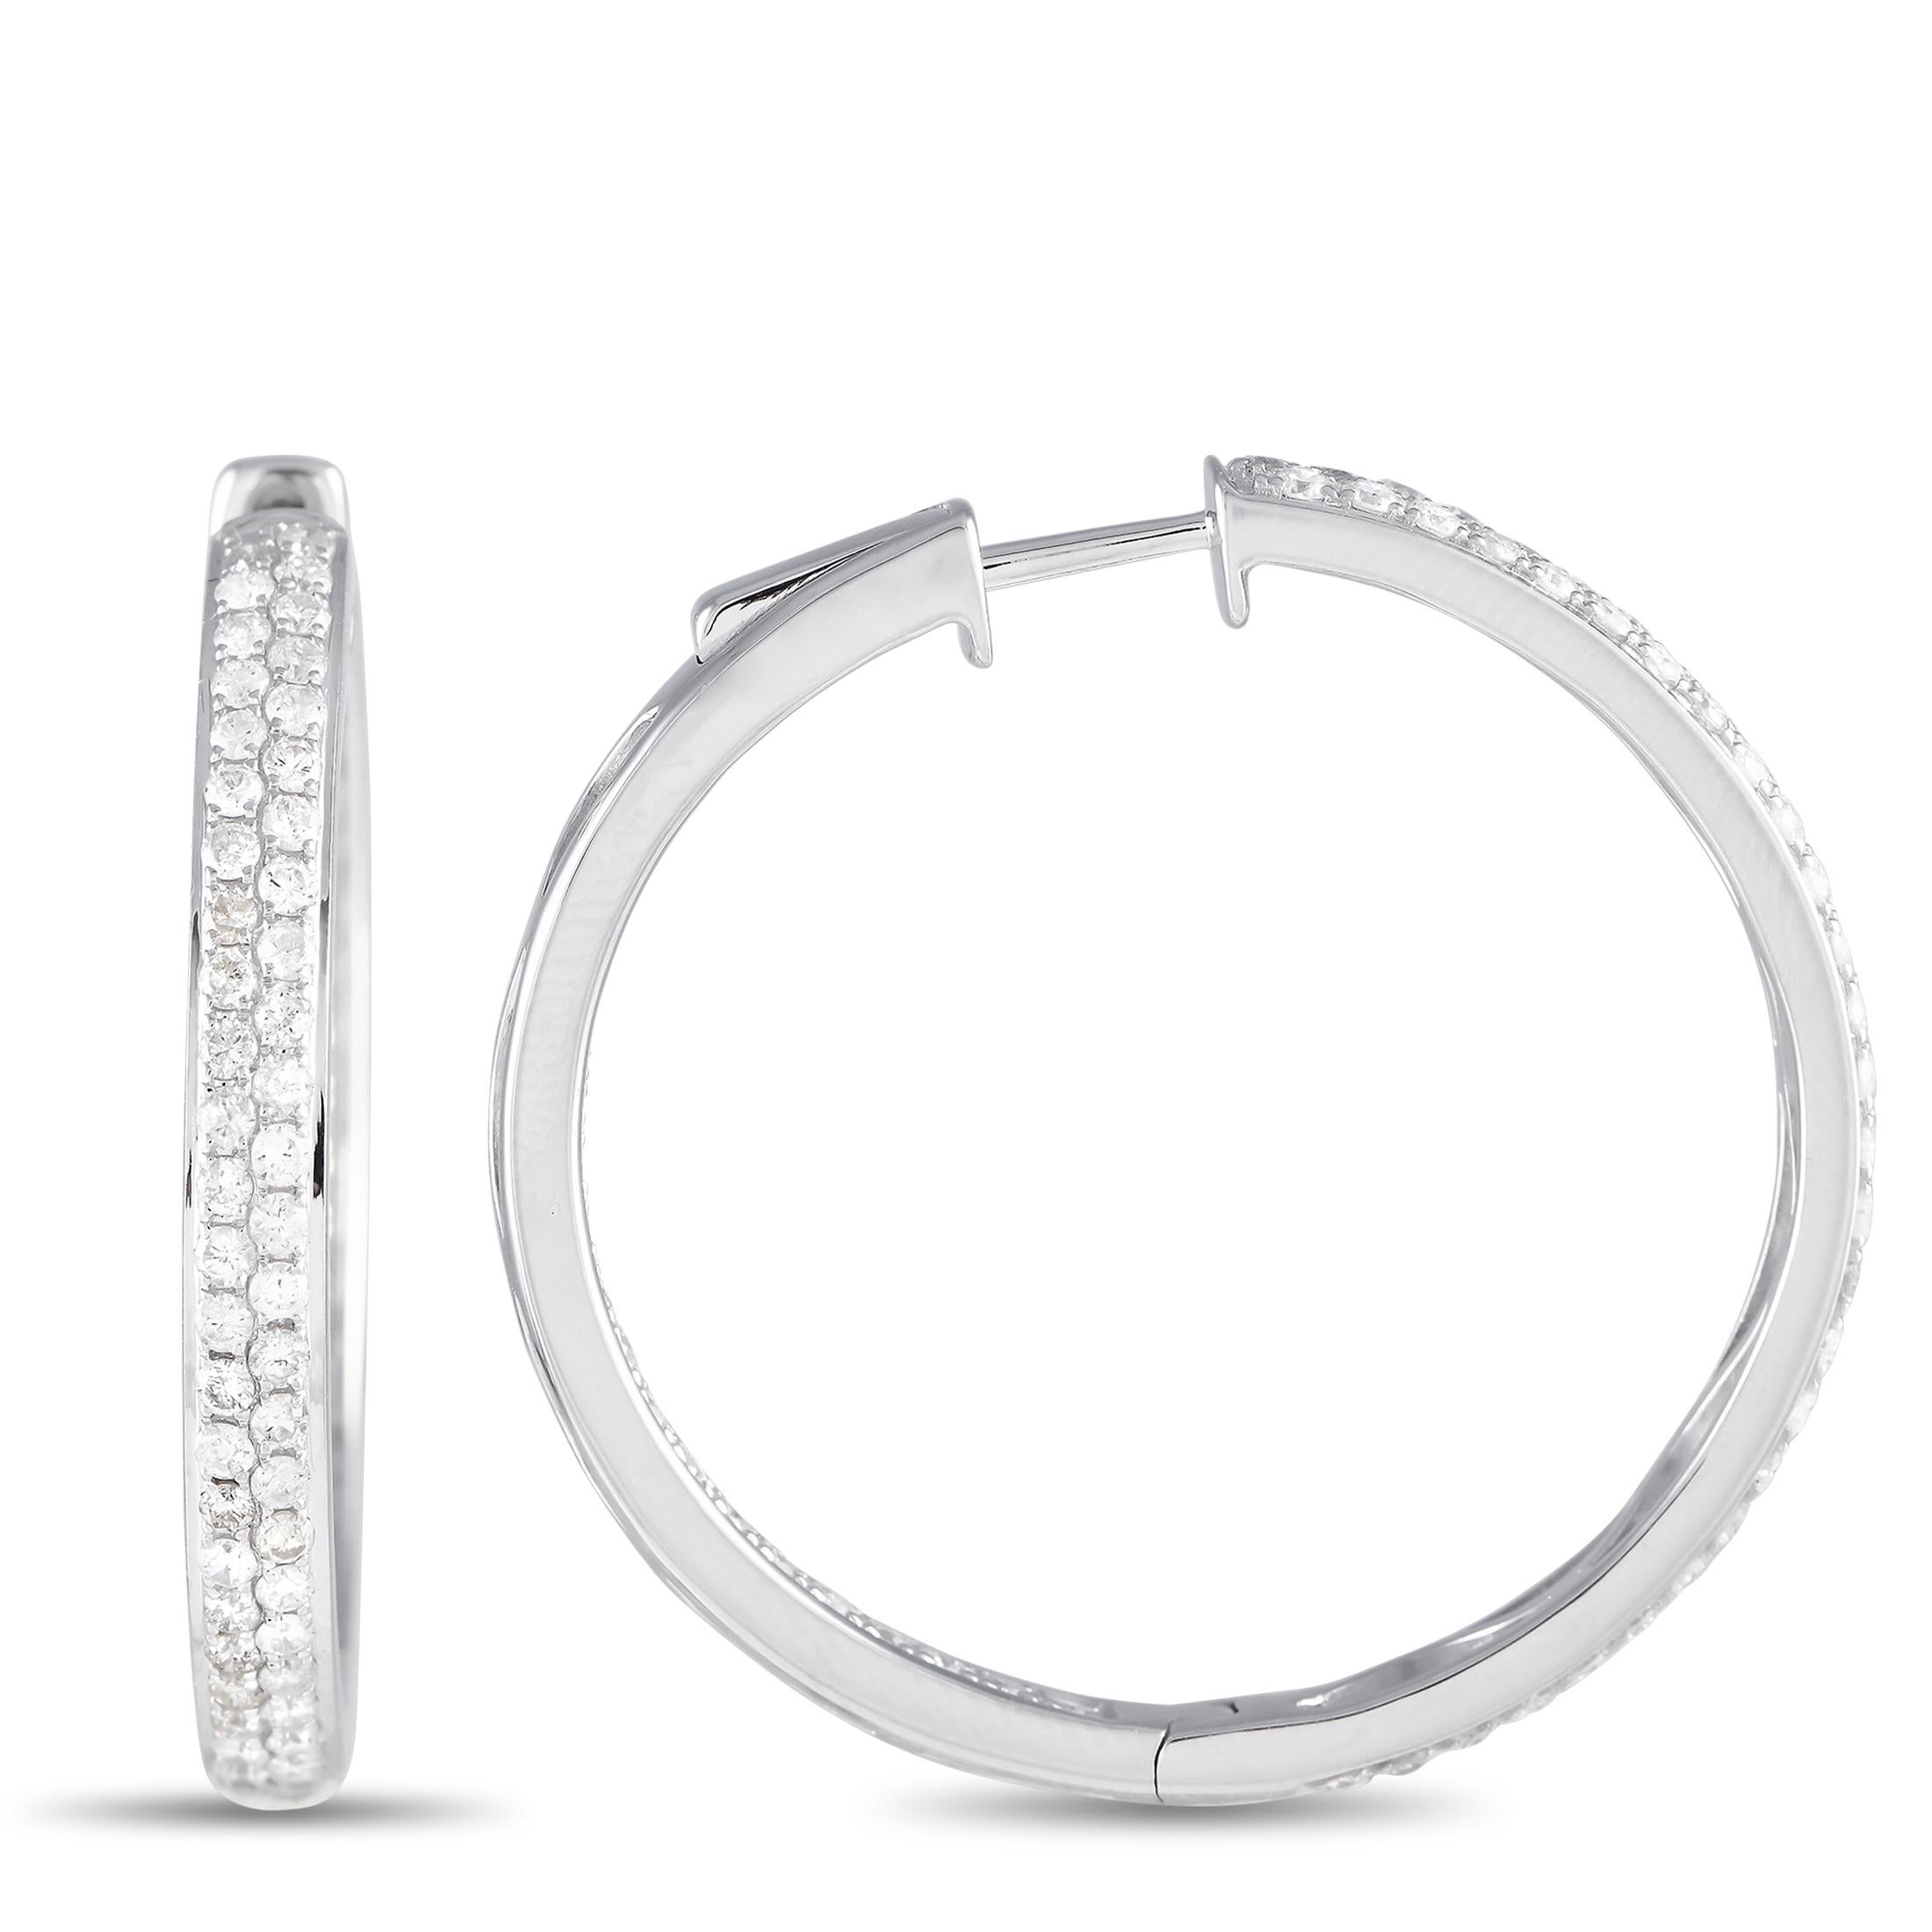 Mit diesem Paar Diamantohrringe sehen Sie besser aus und fühlen sich wohler. Der aus 14-karätigem Weißgold gefertigte 1,25-Zoll-Reifen ist auf der Vorder- und Rückseite mit zwei Reihen von runden Diamanten besetzt. Zeitlos und vielseitig, dieses